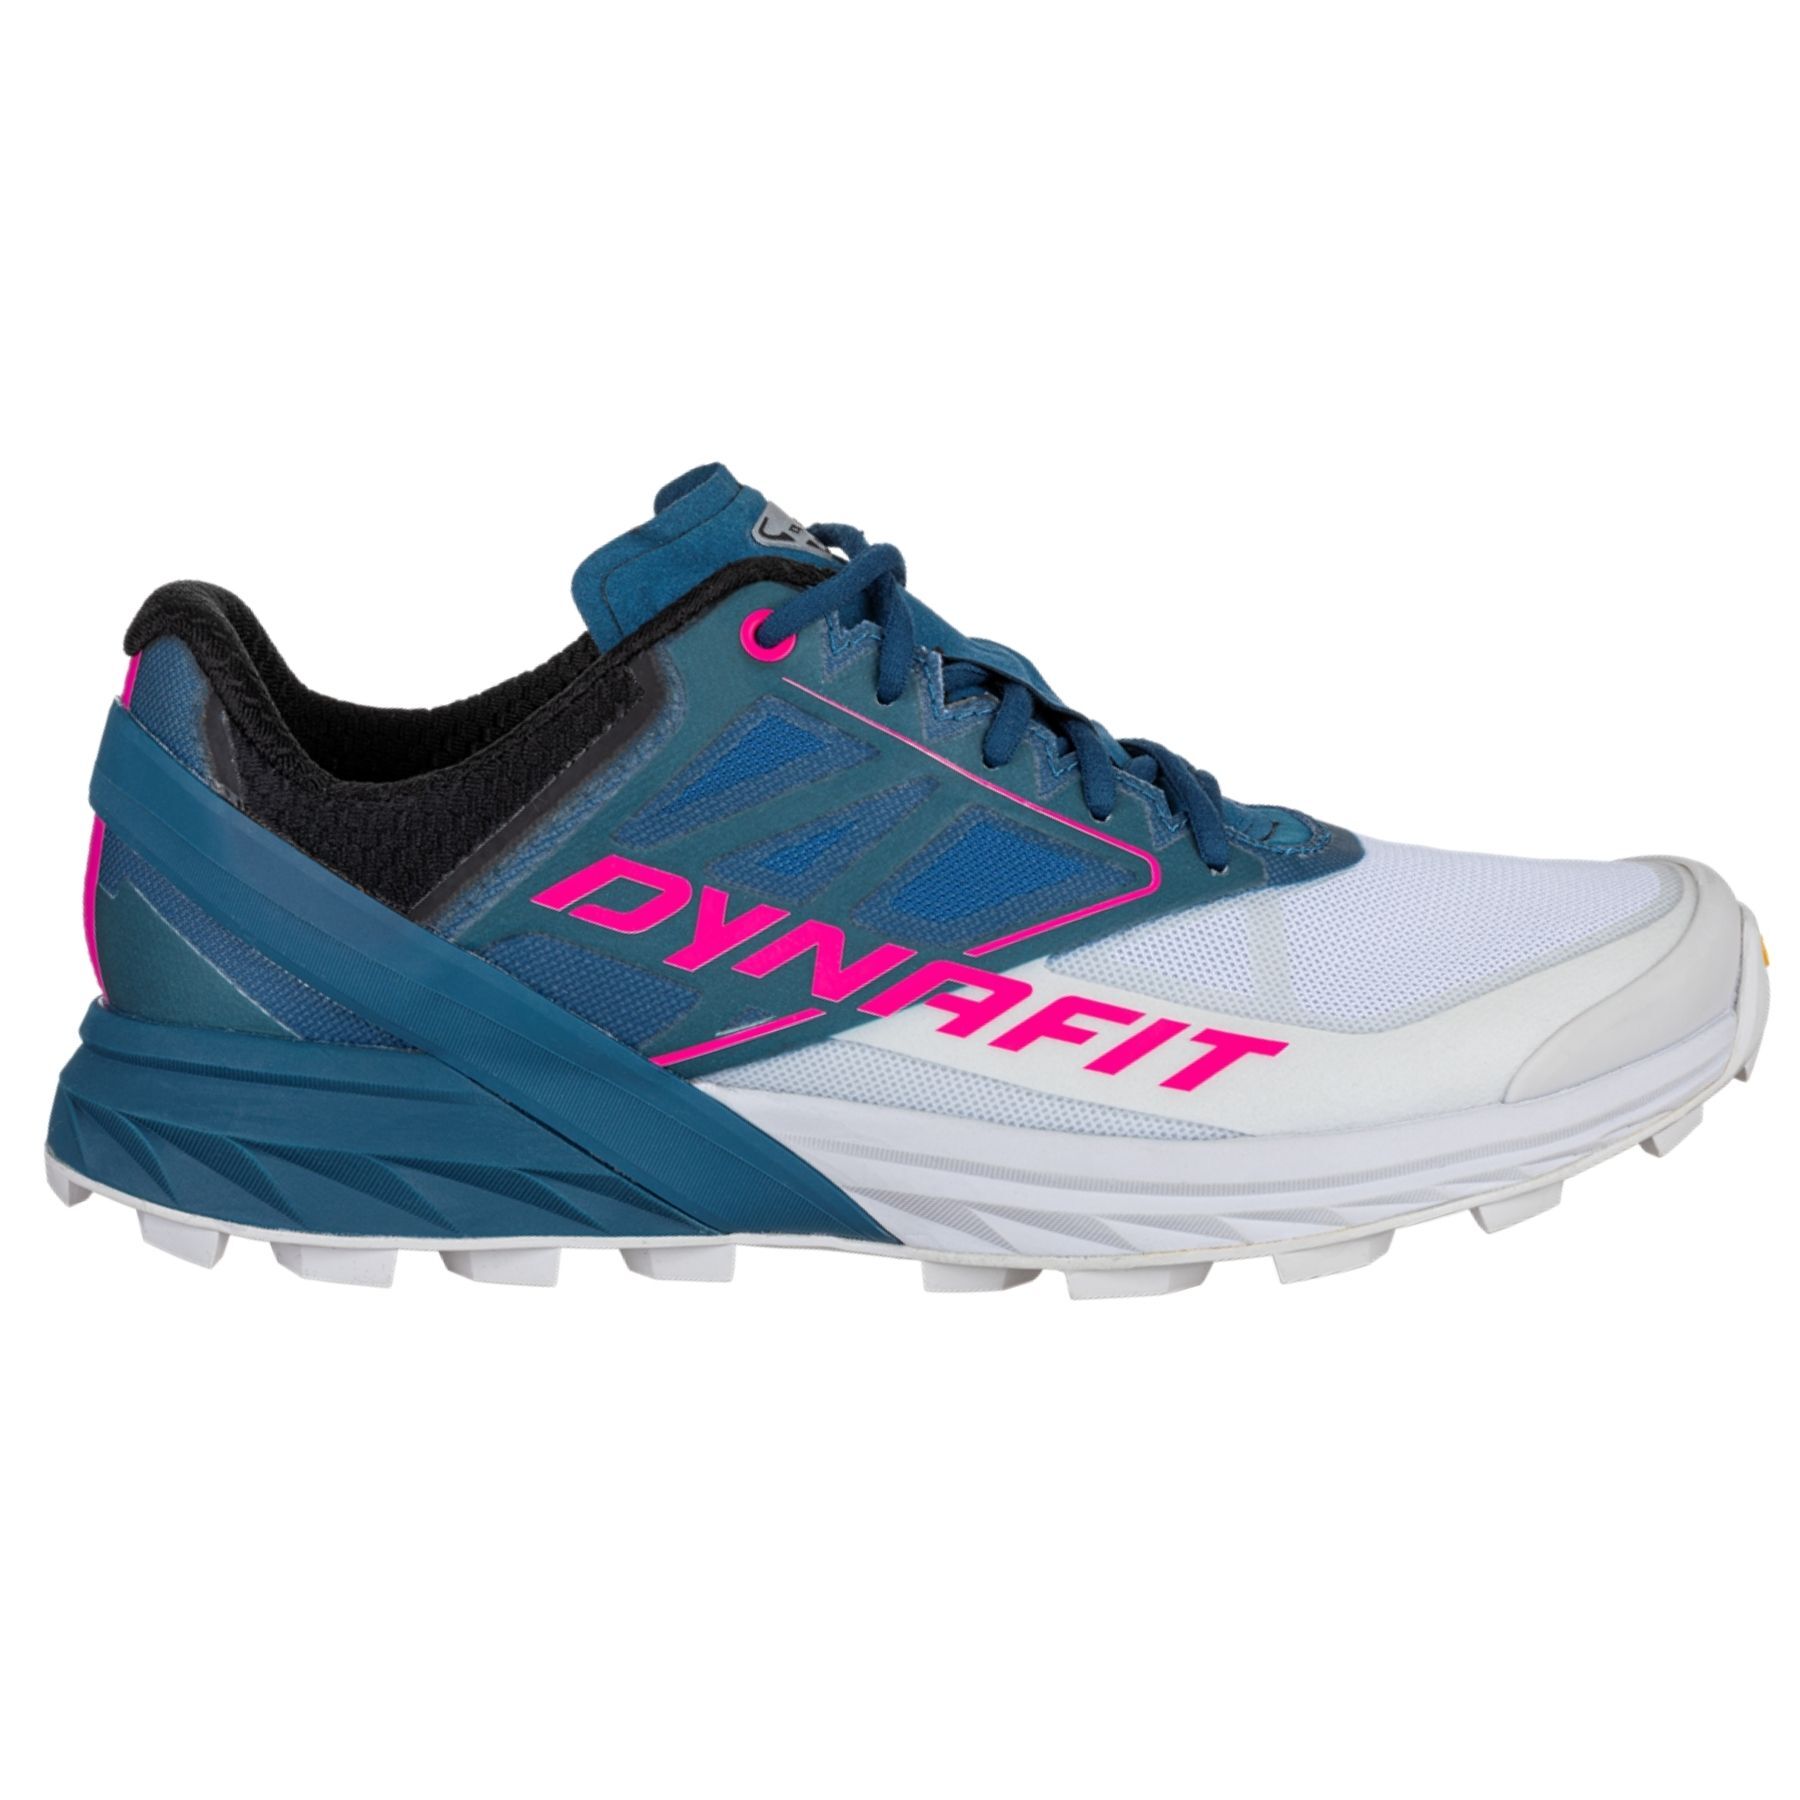 Trivial fábrica fluctuar Dynafit Alpine W - Zapatillas trail running - Mujer